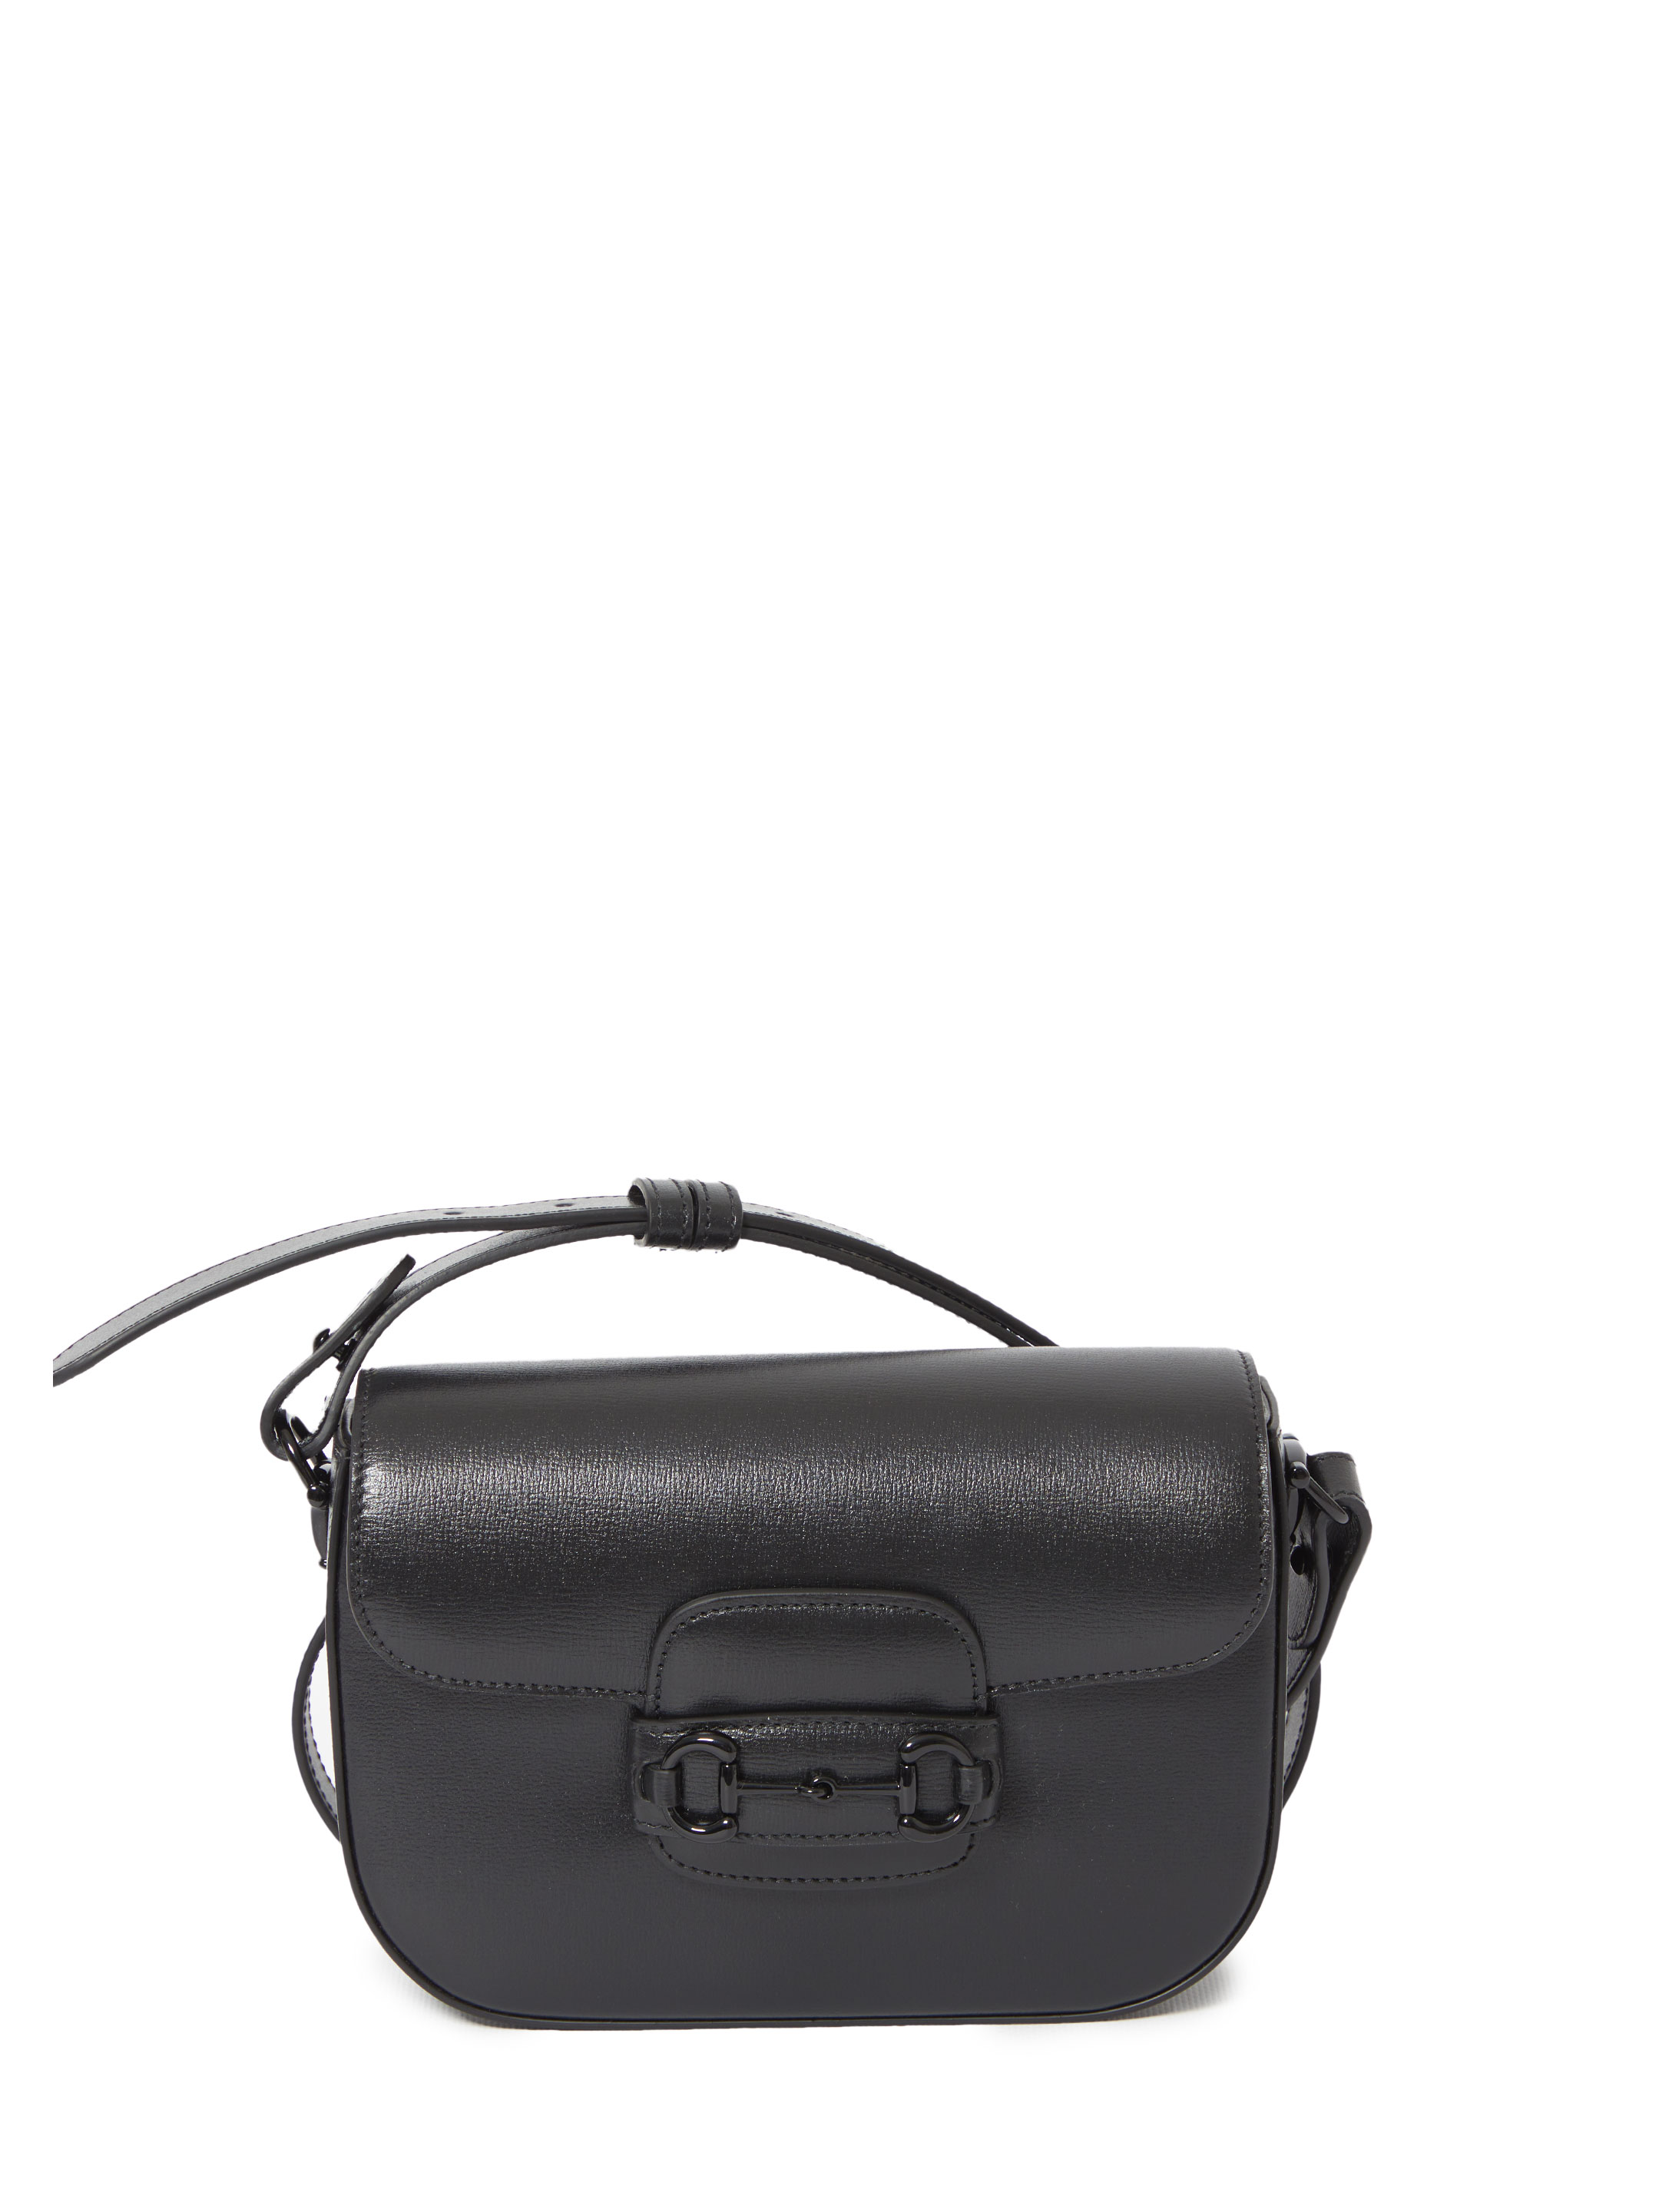 Сумка Gucci Small Gucci Horsebit 1955, черный рюкзак torber t062 bei с одним плечевым ремнем чёрно бежевый